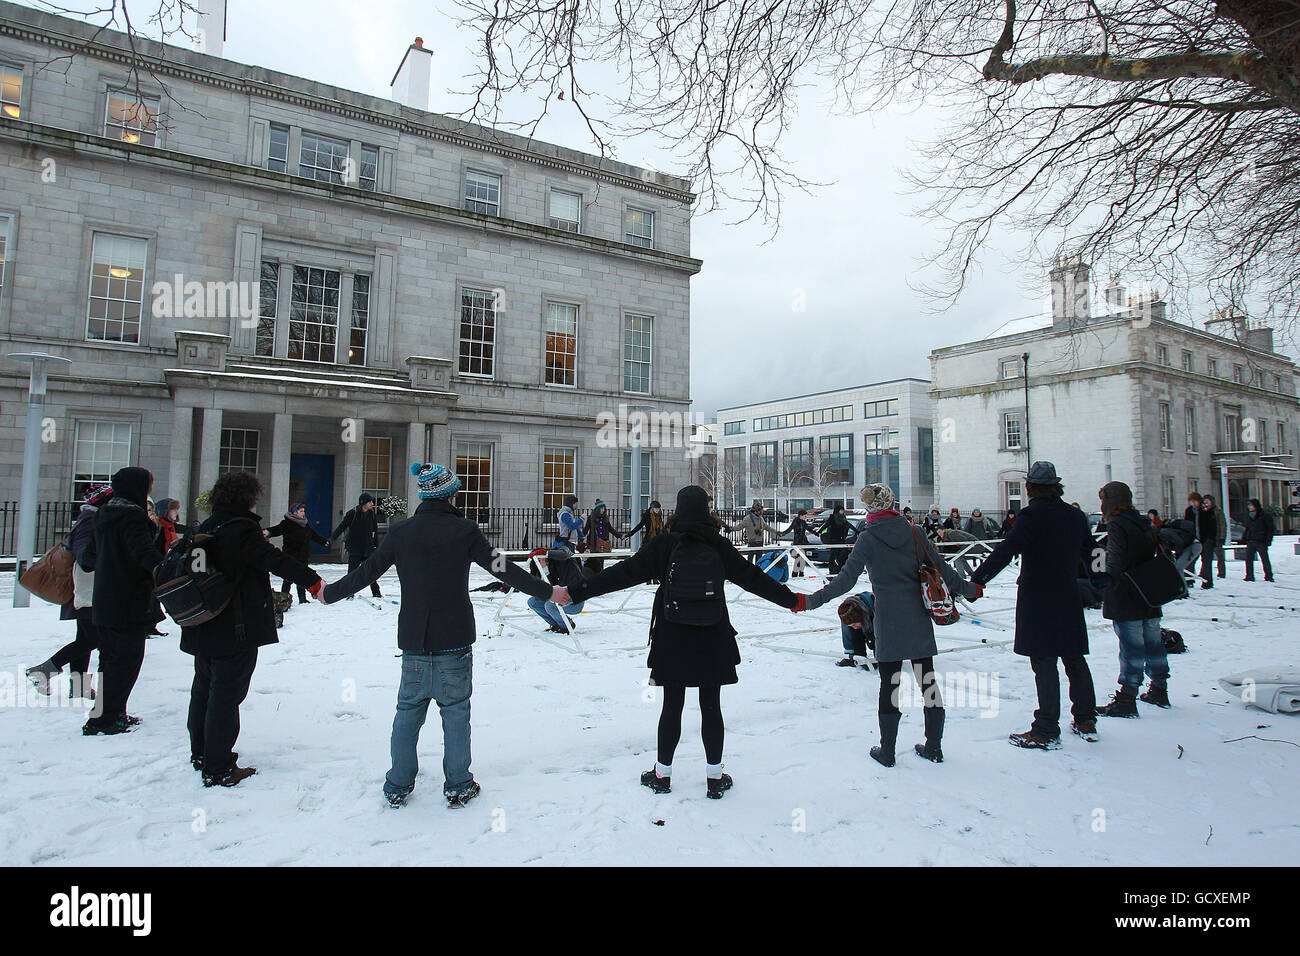 Studenten protestieren auf dem Gelände des Department of Education in Dublin während einer überraschenden eintägigen Konferenz, während sie gegen die vorgeschlagenen staatlichen Kürzungen im Bildungsbereich protestieren. Stockfoto